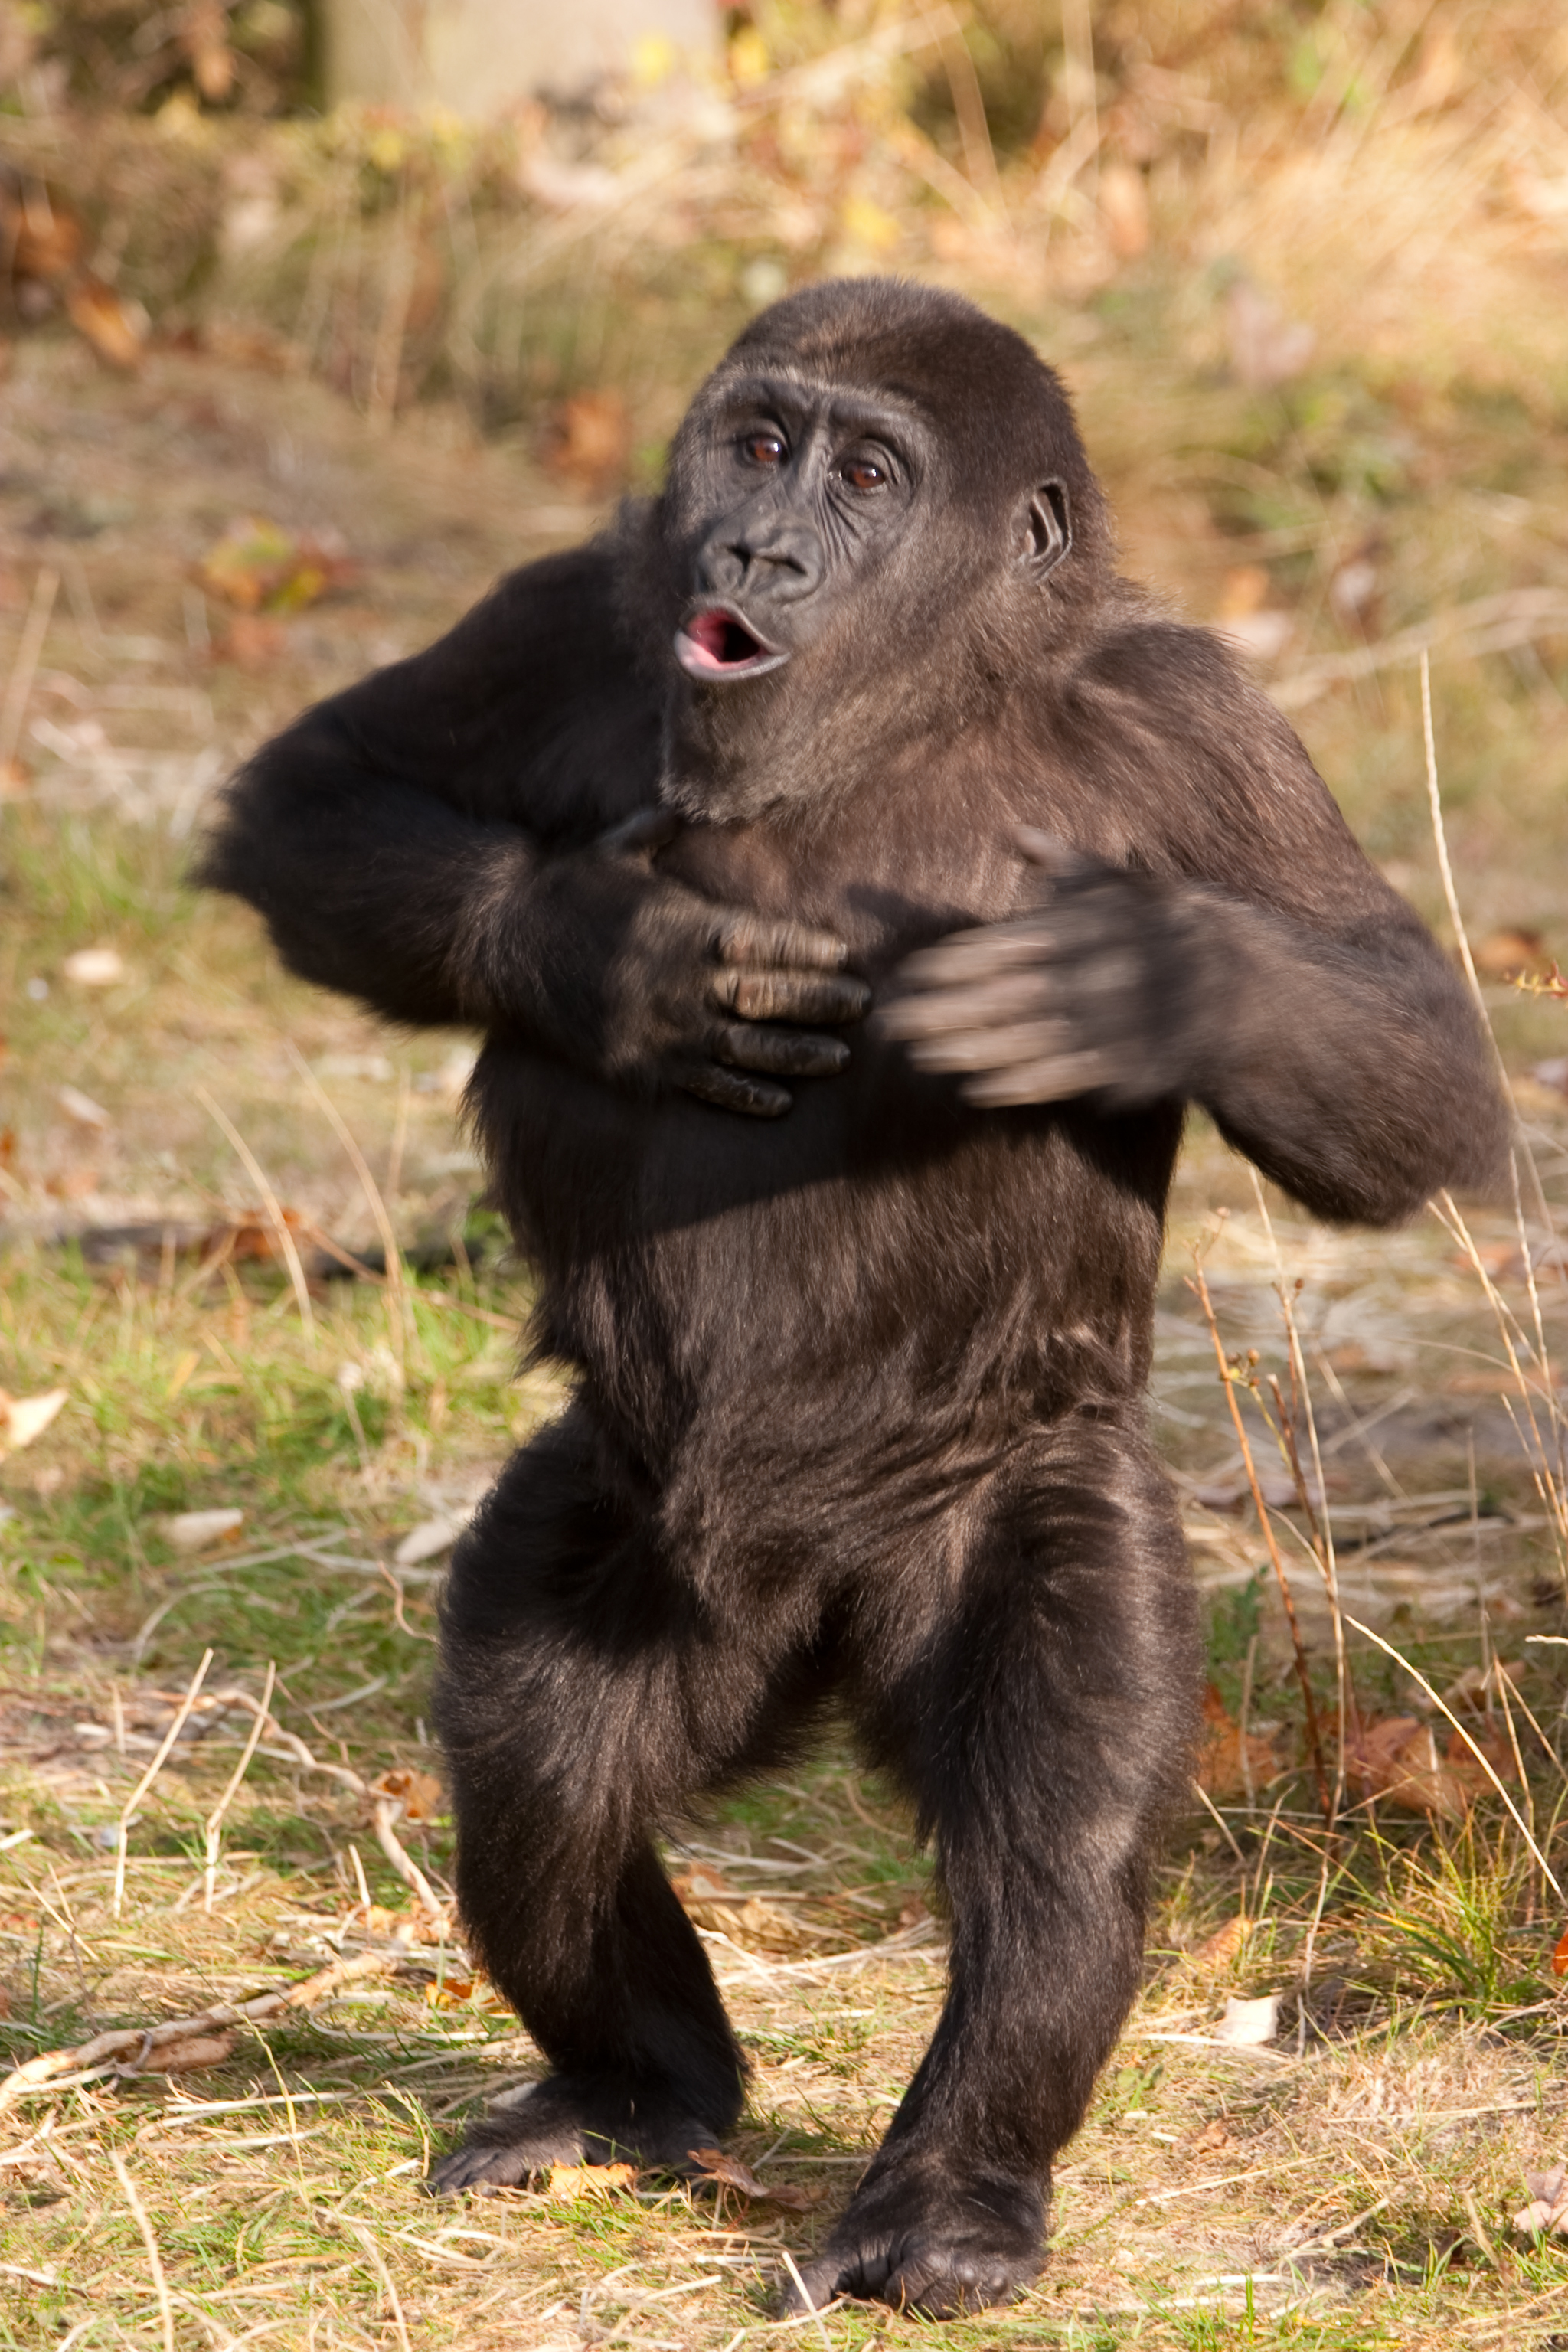 フリー画像 動物写真 哺乳類 猿 サル ゴリラ 子猿 フリー素材 画像素材なら 無料 フリー写真素材のフリーフォト